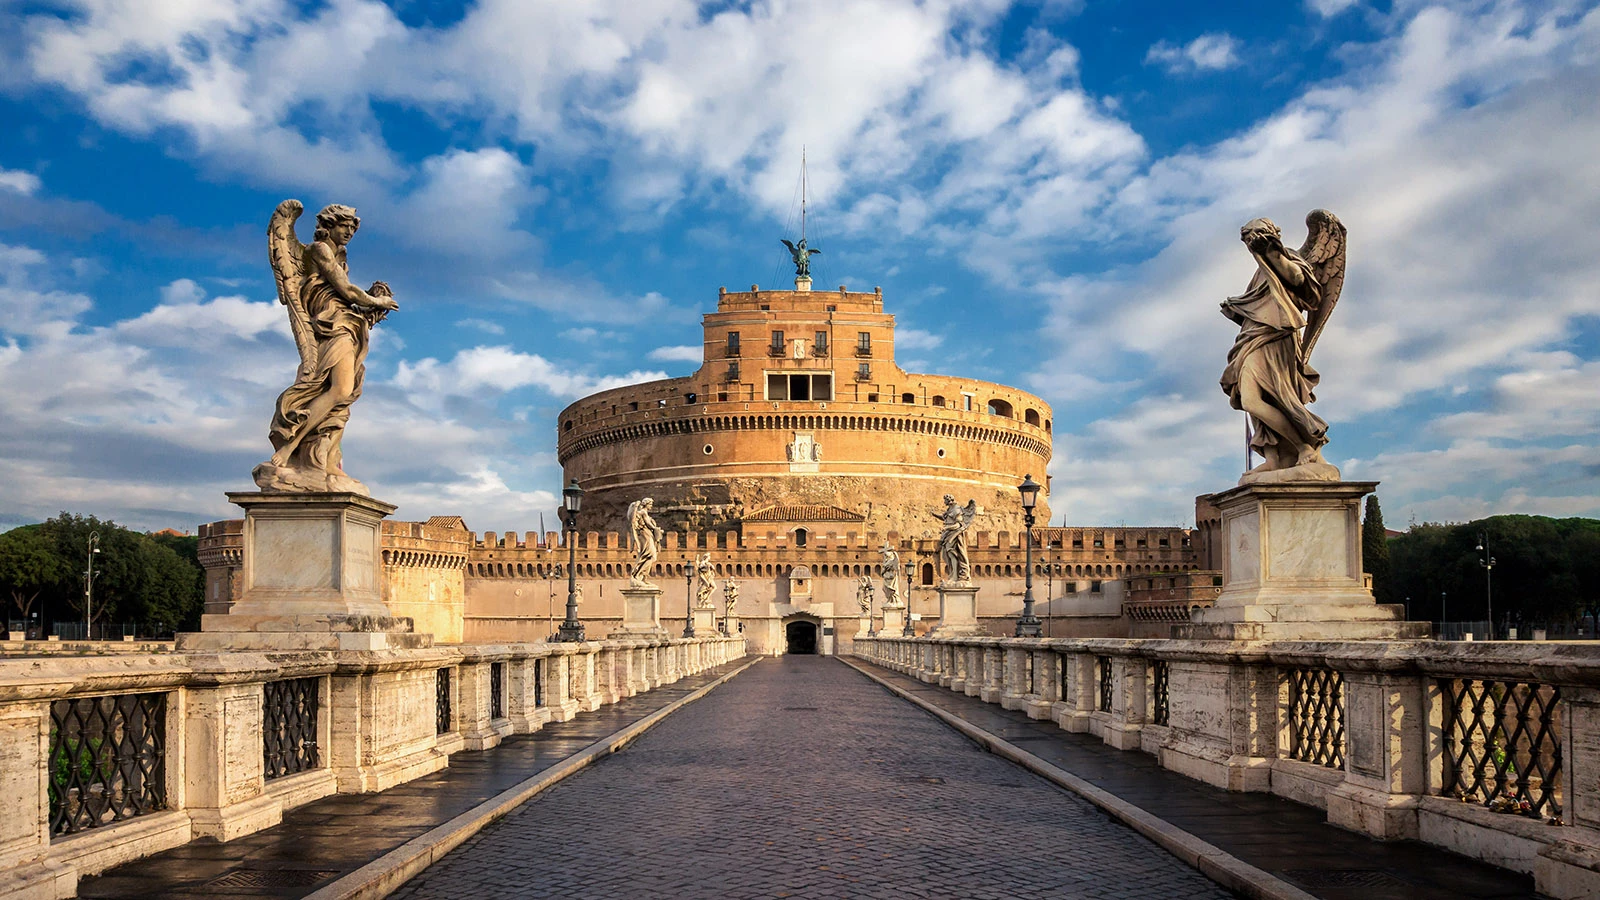 <p>На фото: замок&nbsp;Кастель Сант-Анджело, или мавзолей Адриана, построенный в Древнем Риме, в настоящее время является туристической достопримечательностью Италии</p>